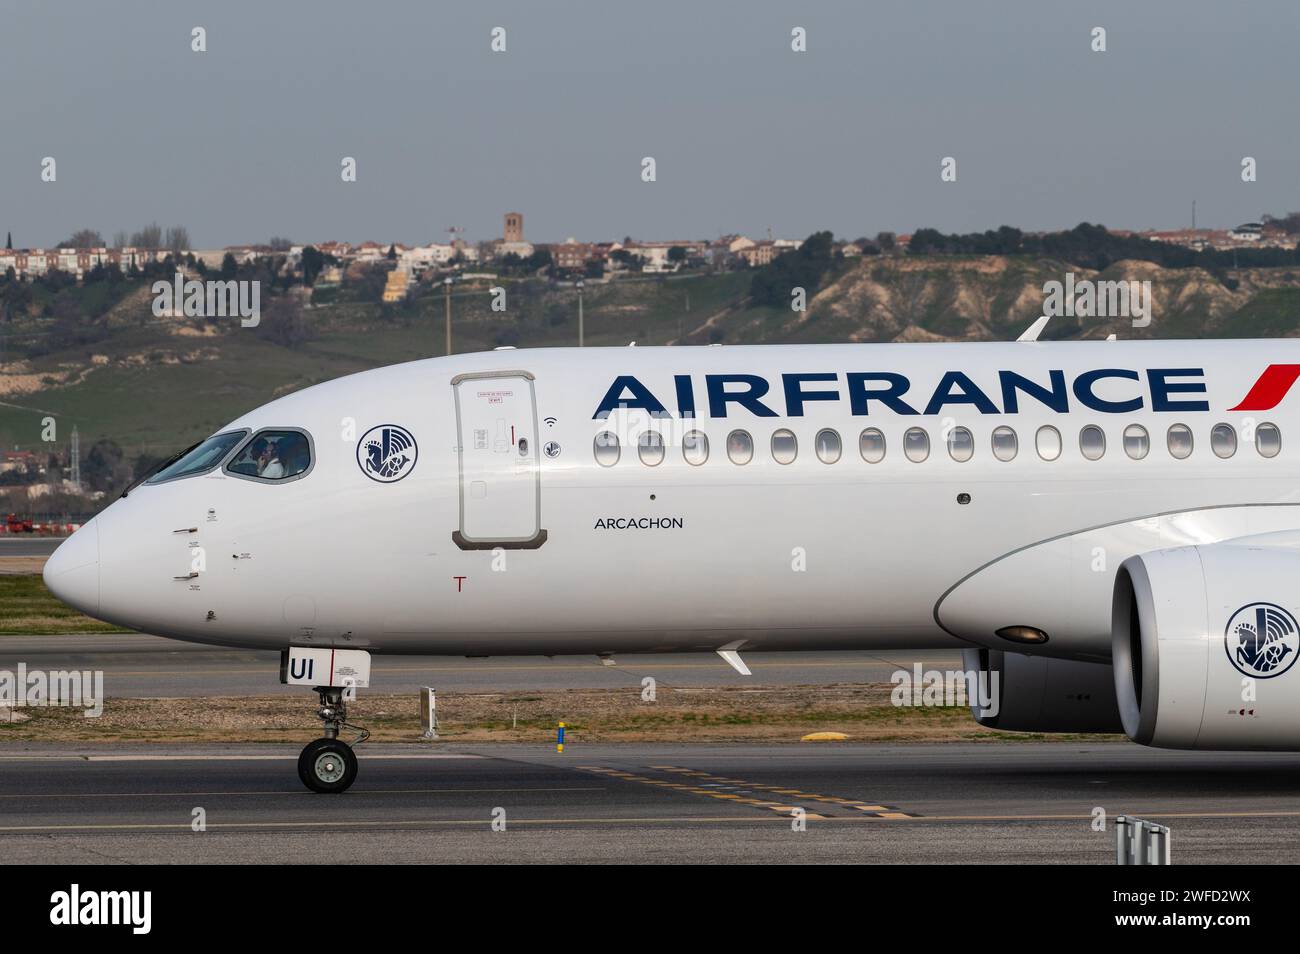 Ein kommerzieller Flug von Air France auf einer Landebahn des Flughafens Adolfo Suarez Madrid-Barajas. Stockfoto